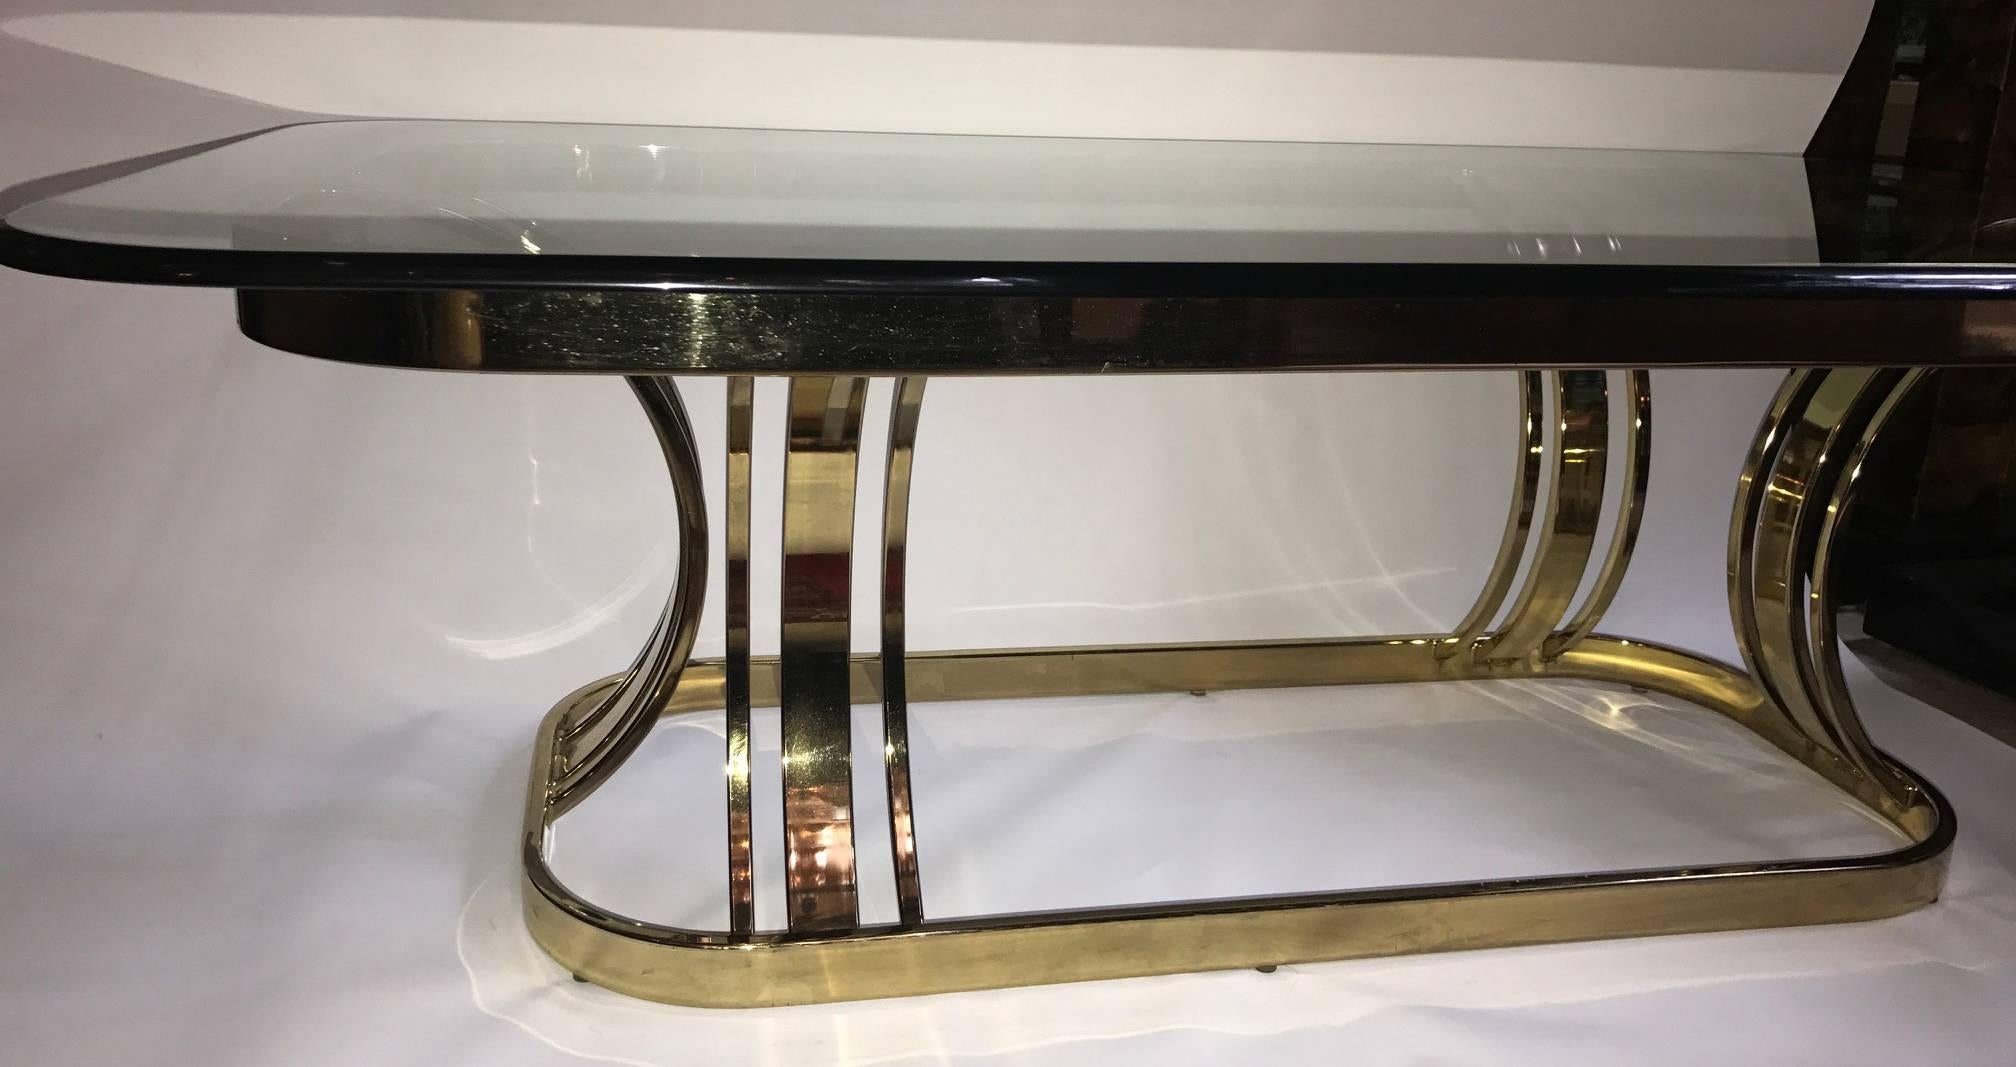 Table basse italienne dorée avec plateau en verre, datant des années 1970.

Mesures :
Hauteur : 16.5